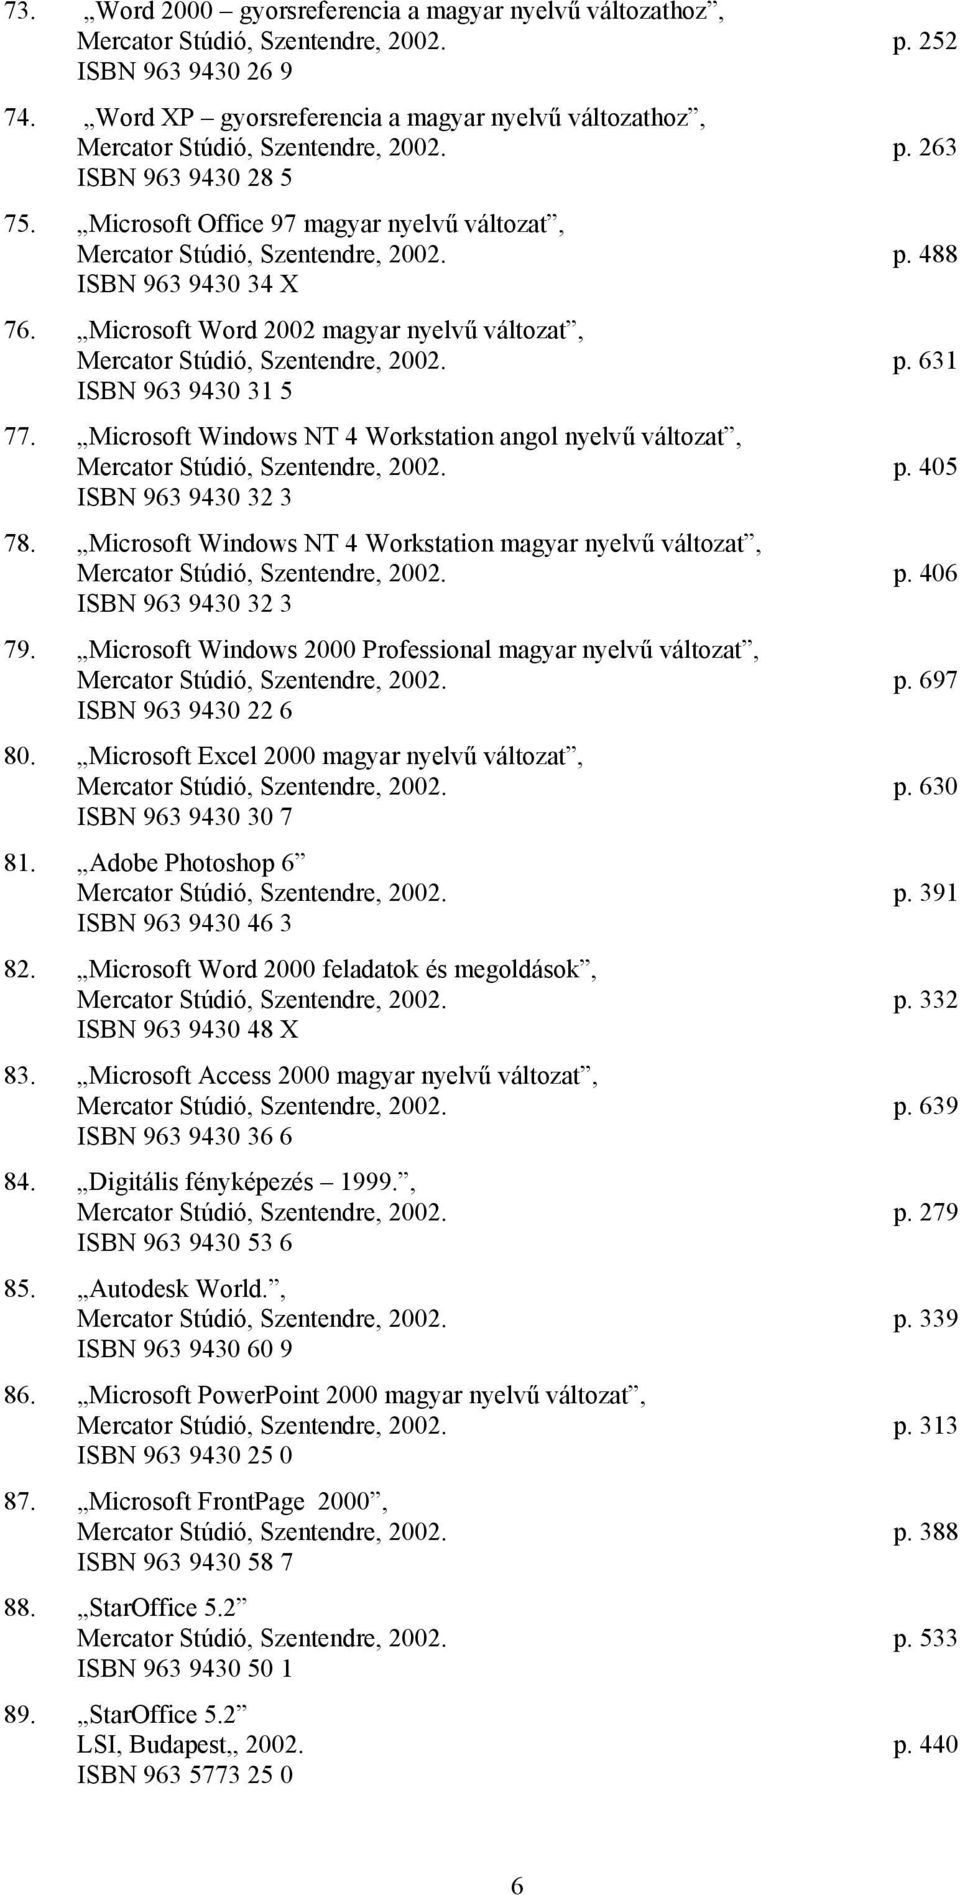 Microsoft Word 2002 magyar nyelvű változat, Mercator Stúdió, Szentendre, 2002. p. 631 ISBN 963 9430 31 5 77.